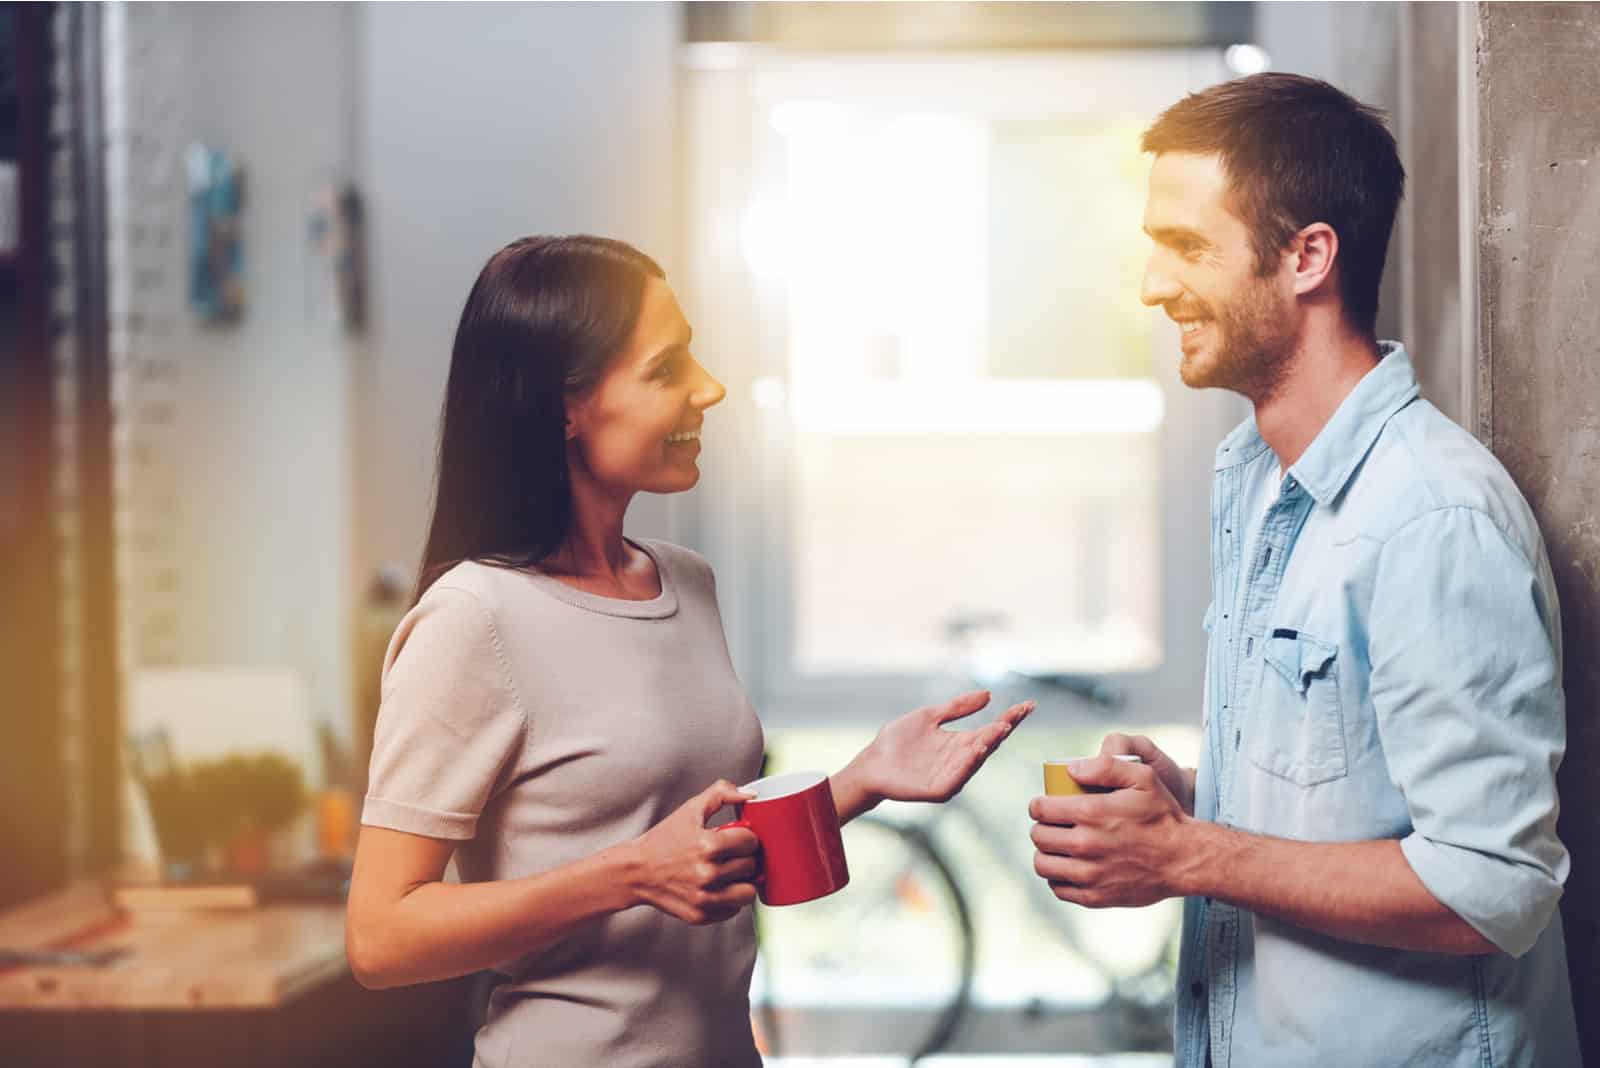 Un homme et une femme souriants se tiennent debout et parlent tout en tenant des tasses de café dans leurs mains